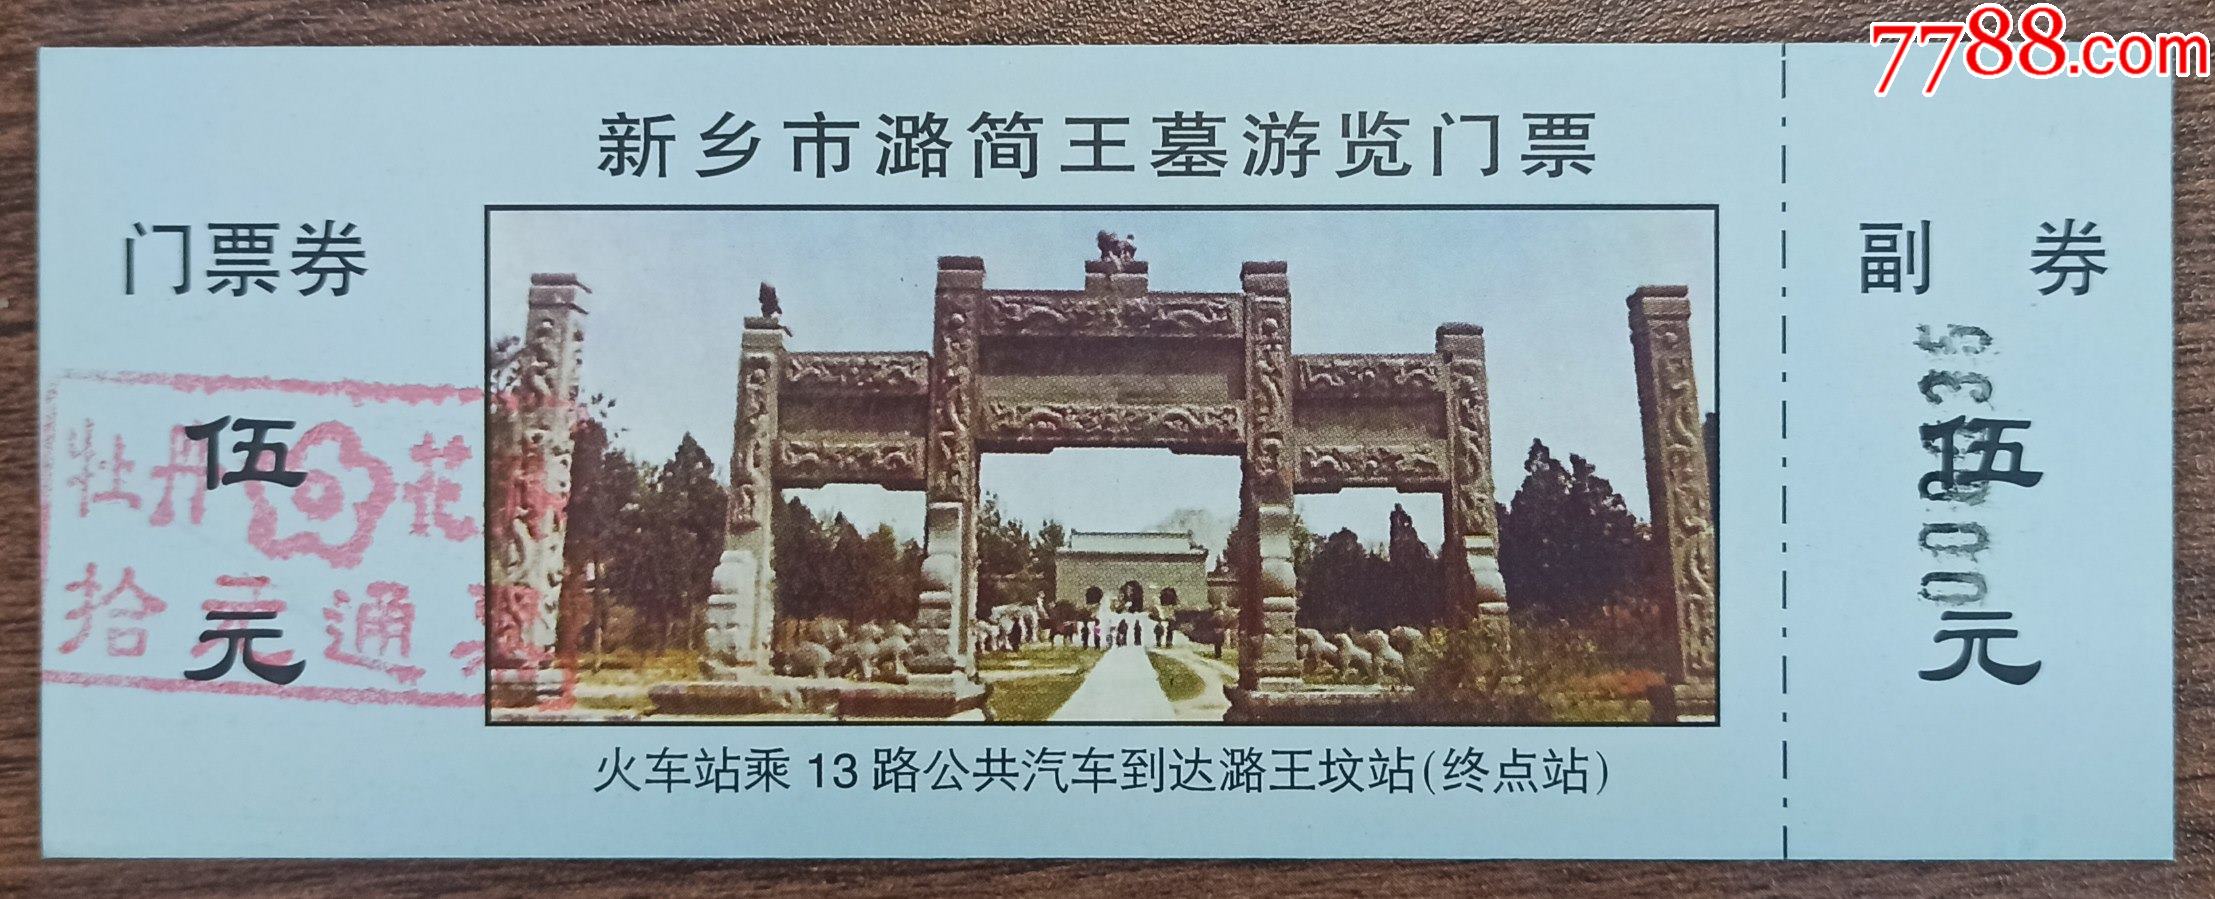 新乡潞王陵景区门票图片